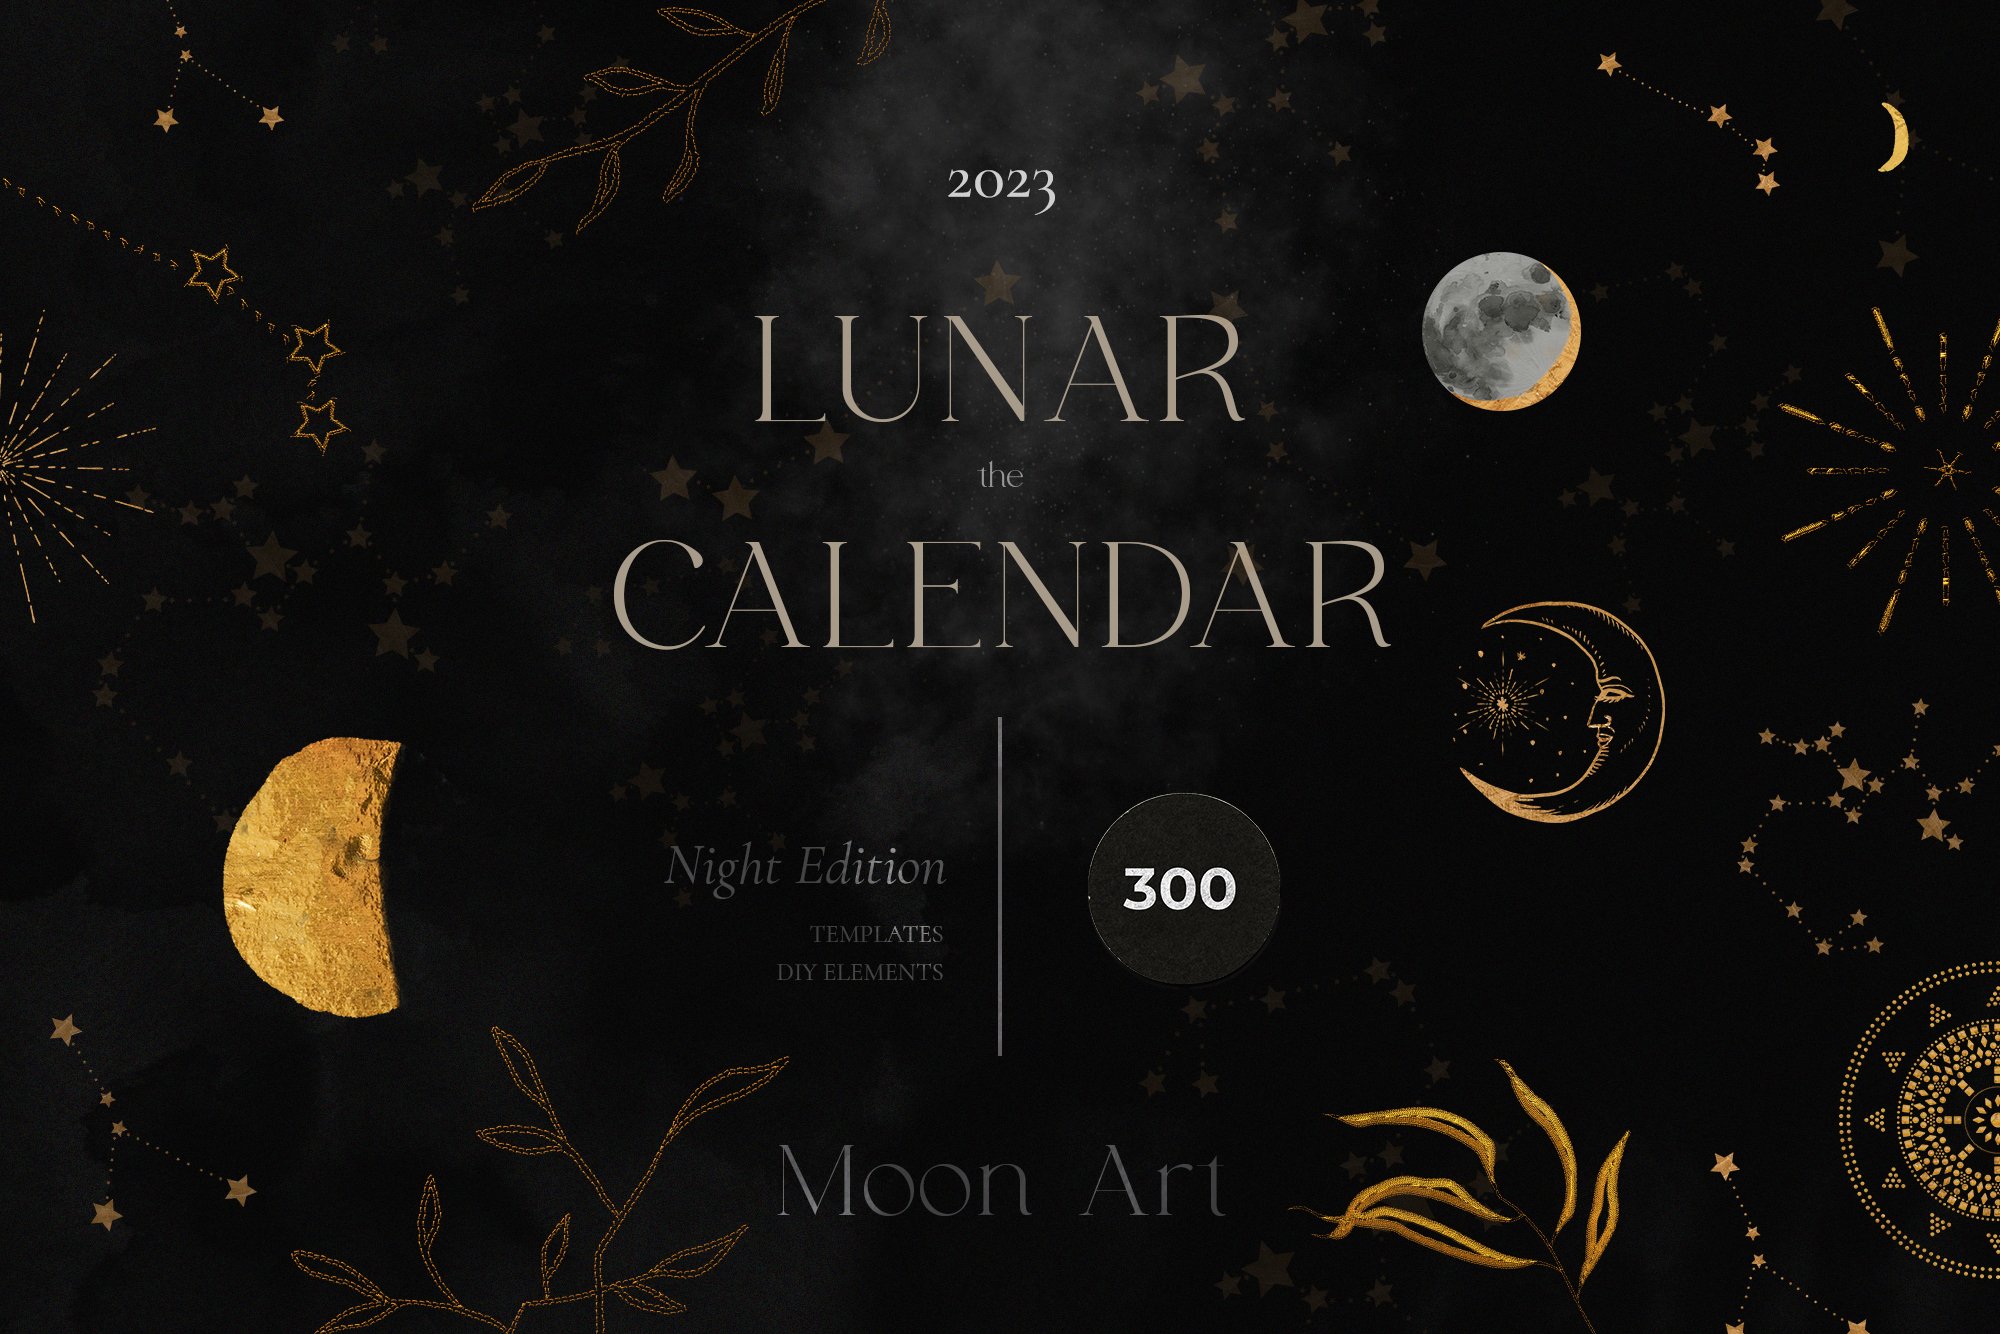 2023 LUNAR CALENDAR - Night Edition cover image.